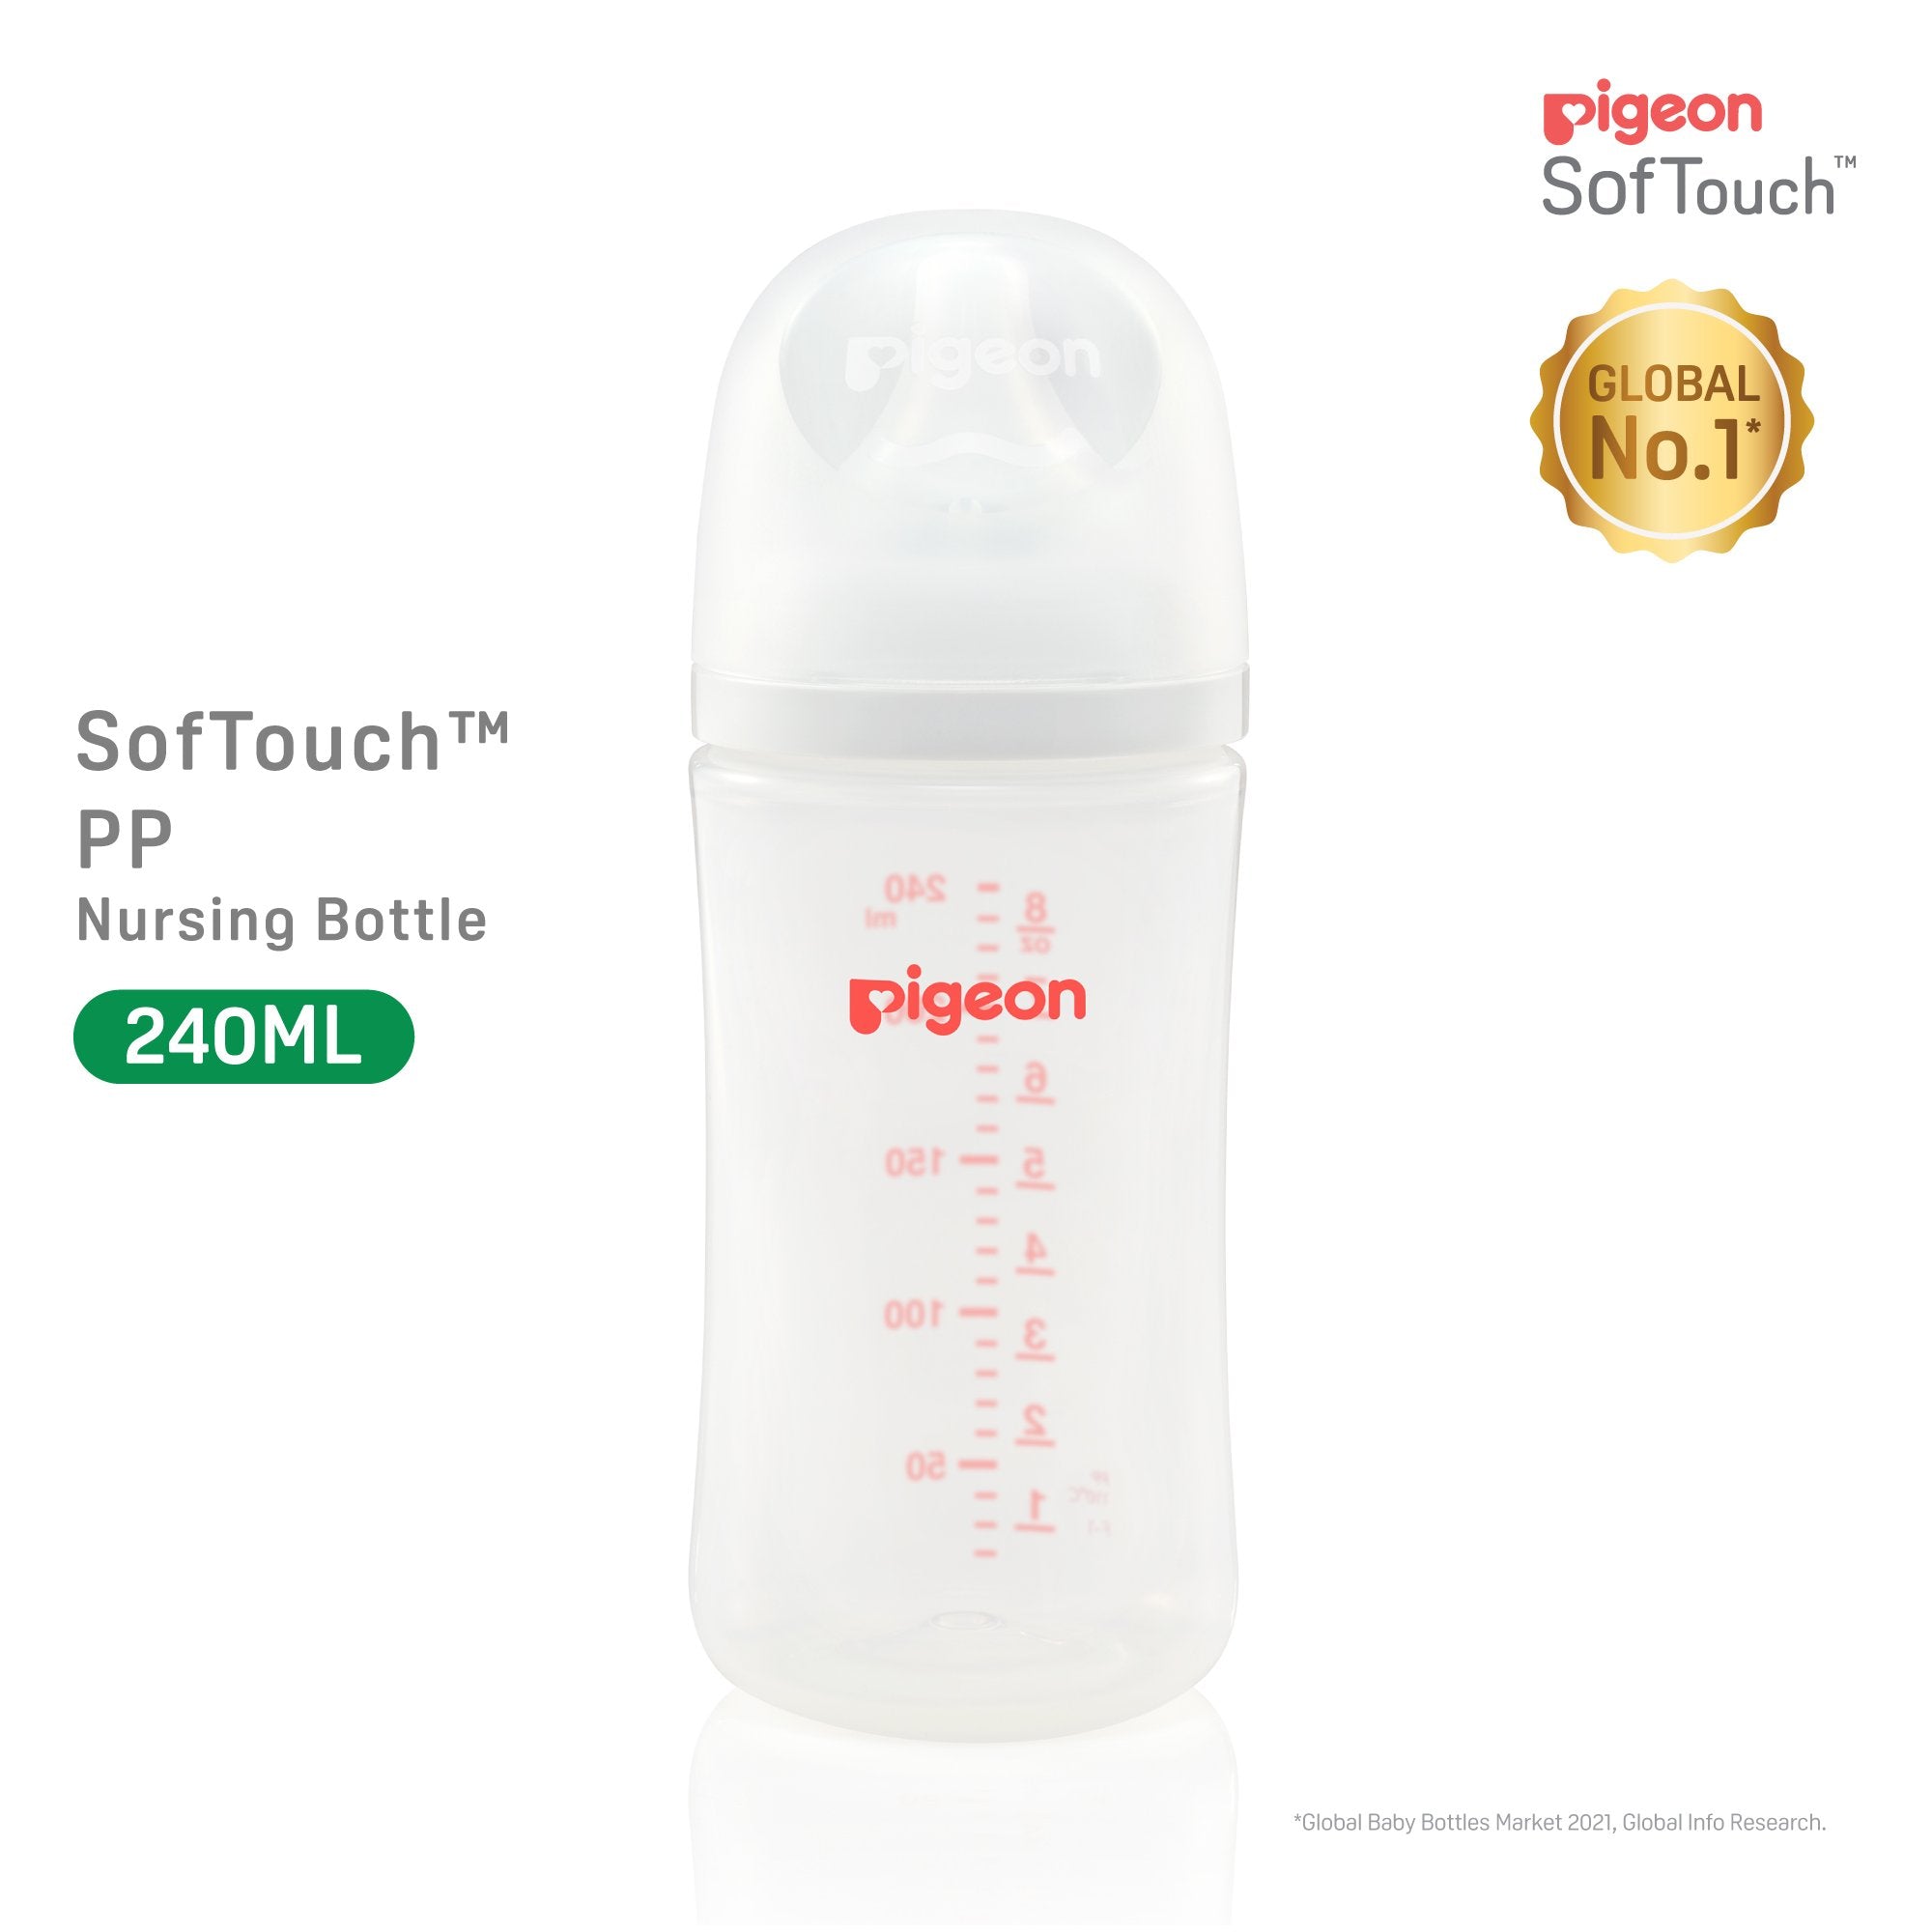 Pigeon SofTouch 3 Nursing Bottle PP 240ml